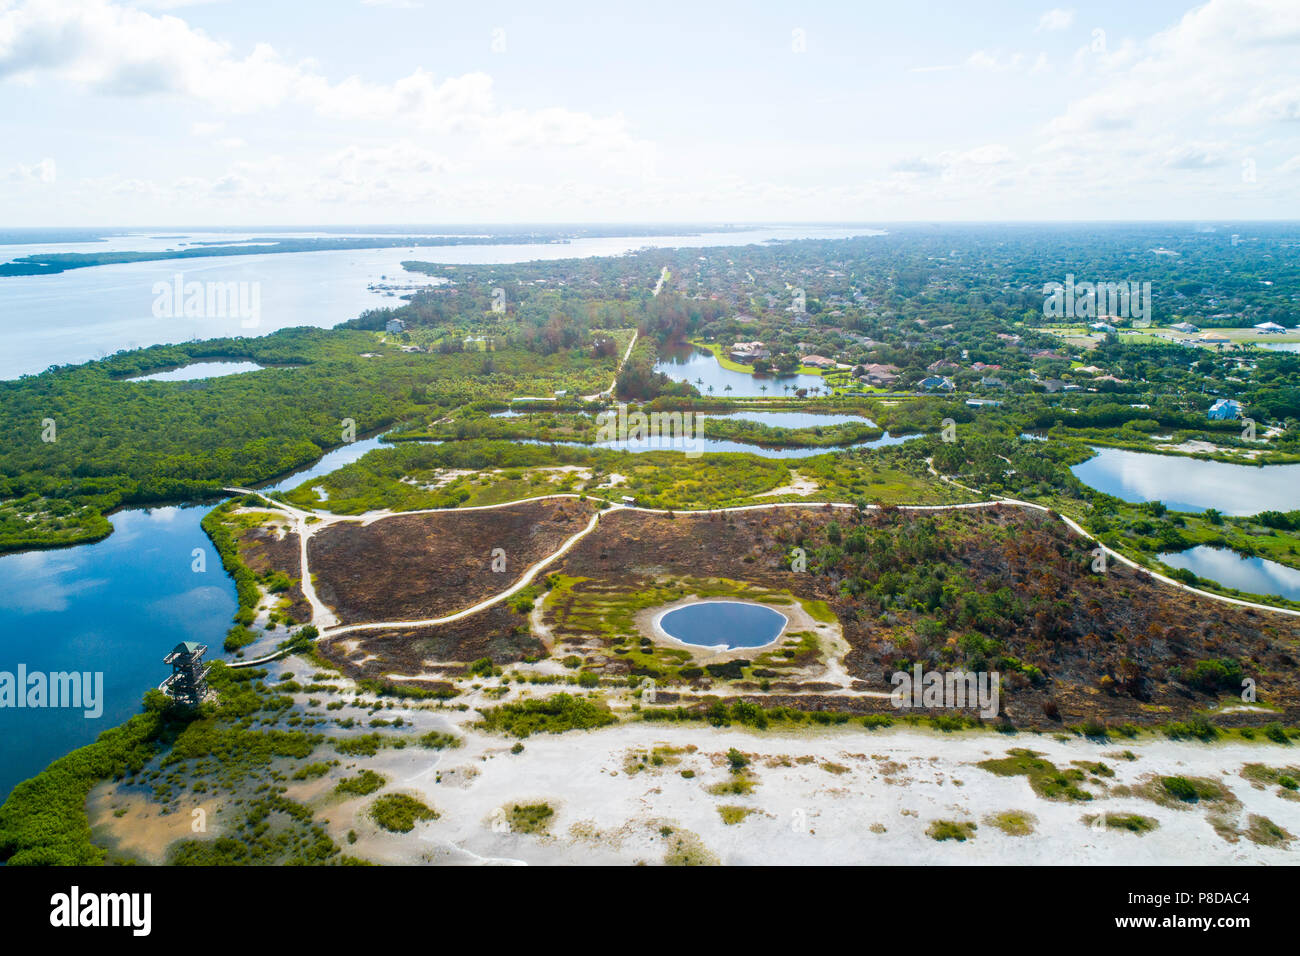 Robinson preservar Bradenton, un 487-acre mosaico de marismas, manglares, playas y torre de observación junto con muchos senderos para caminatas y ciclismo Foto de stock